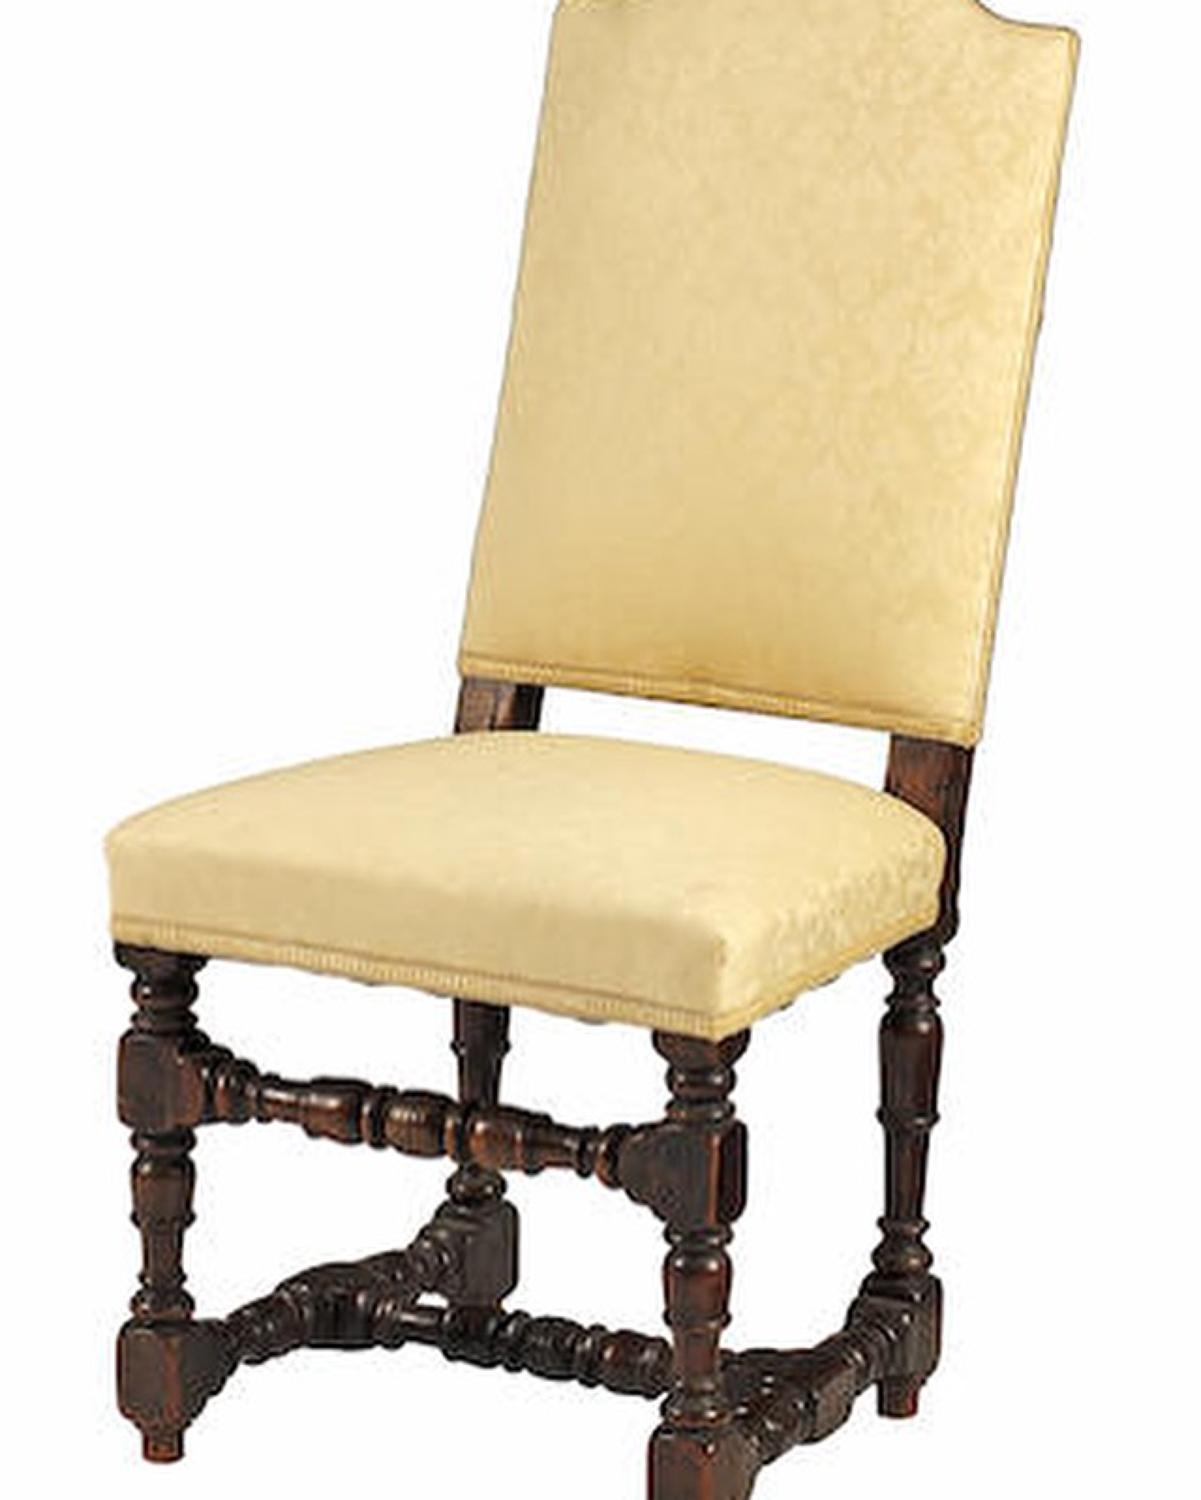 18th Century walnut side chair